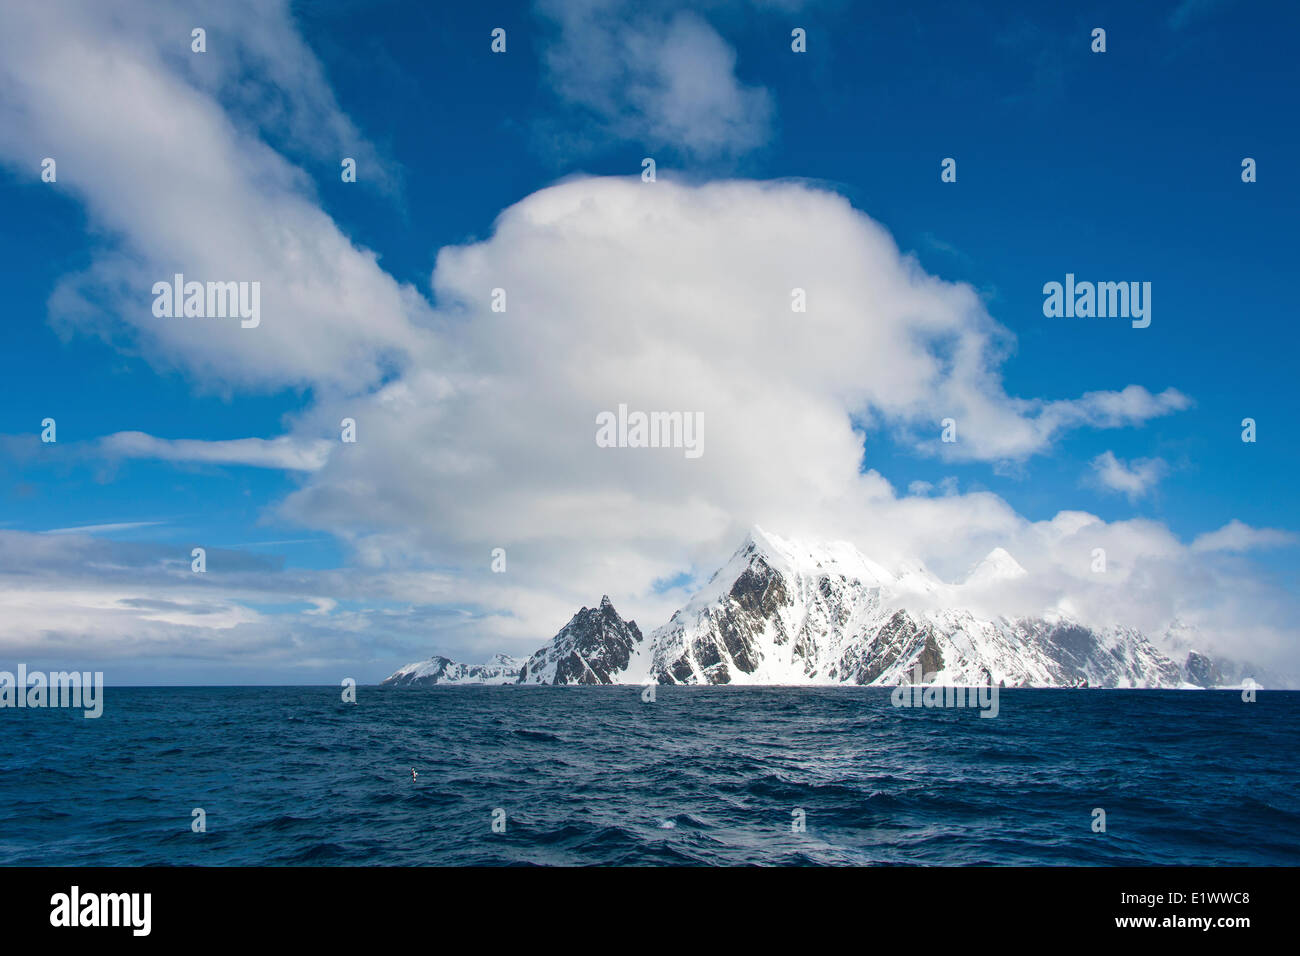 Elephant Island, Îles Shetland du Sud, péninsule antarctique. Emplacement du site d'expédition Shackelton. Banque D'Images